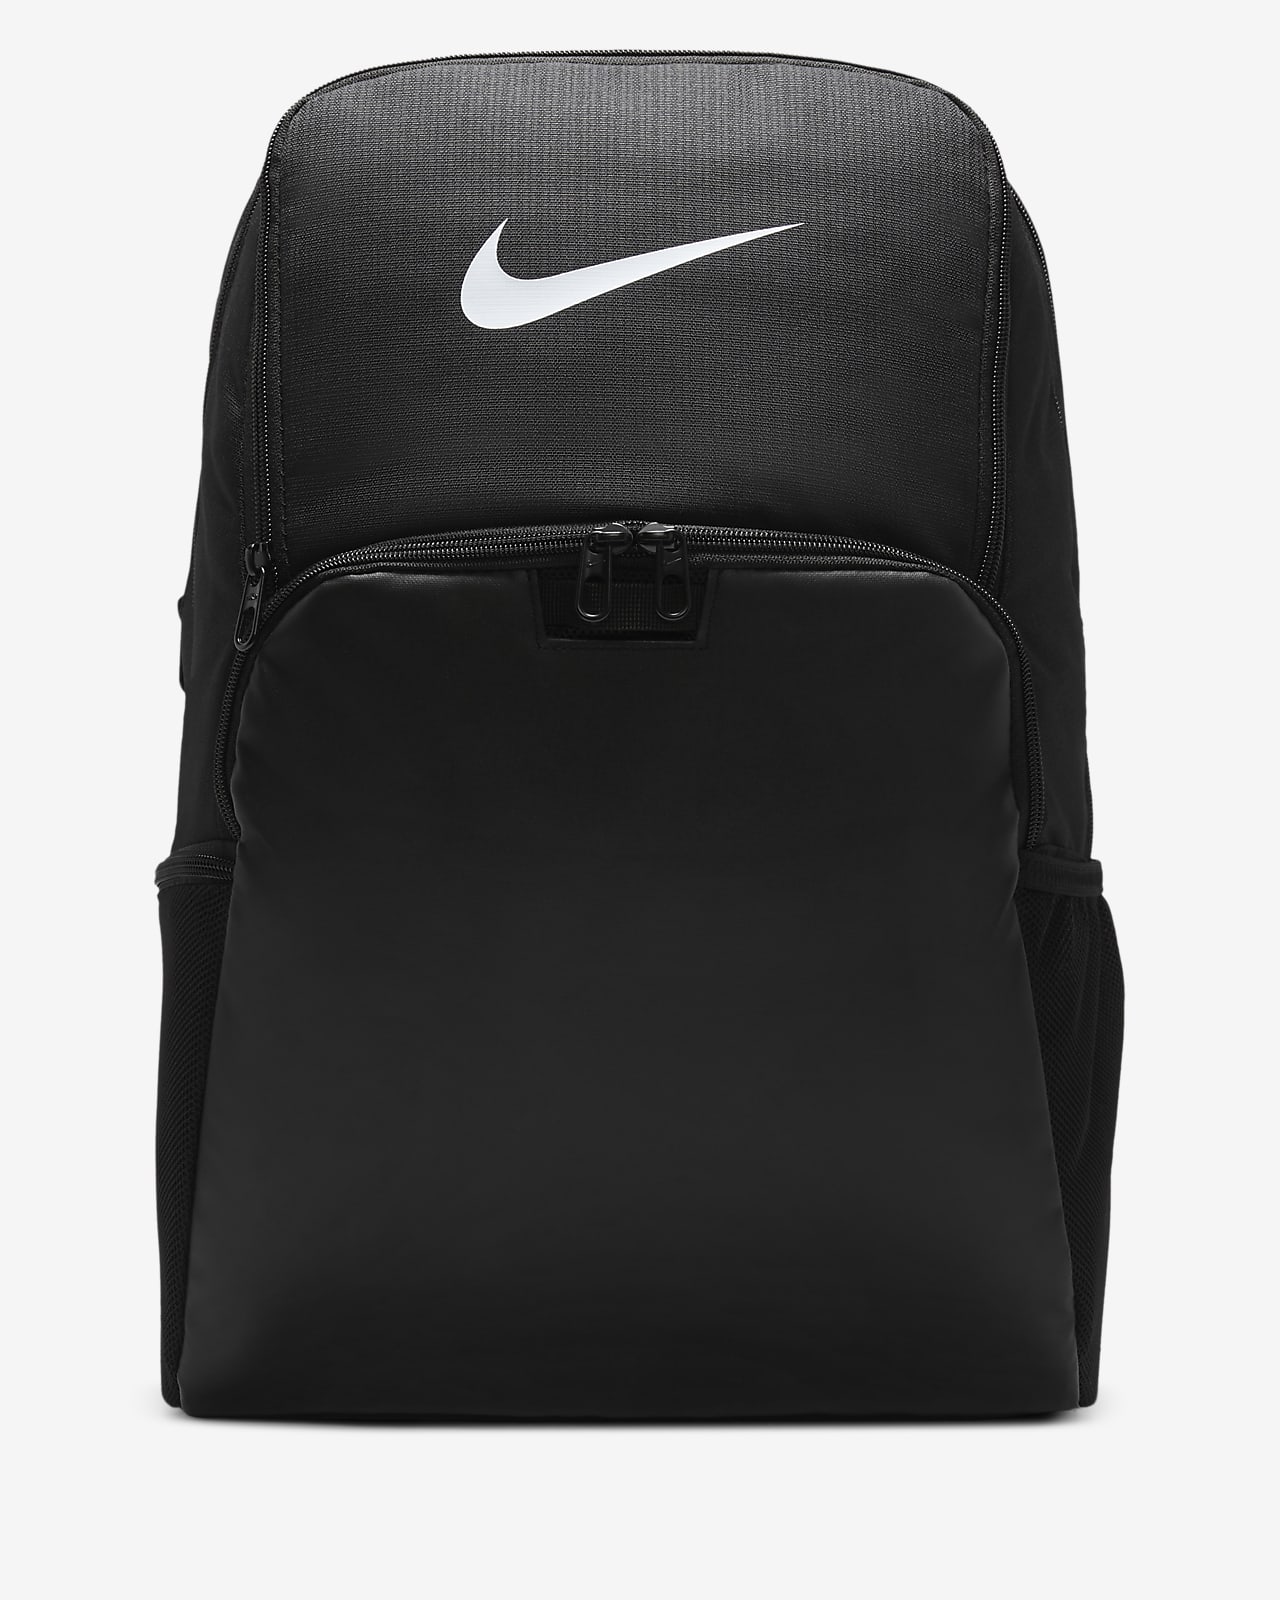 Nike Brasilia Training Backpack Large, 30L). Nike.com